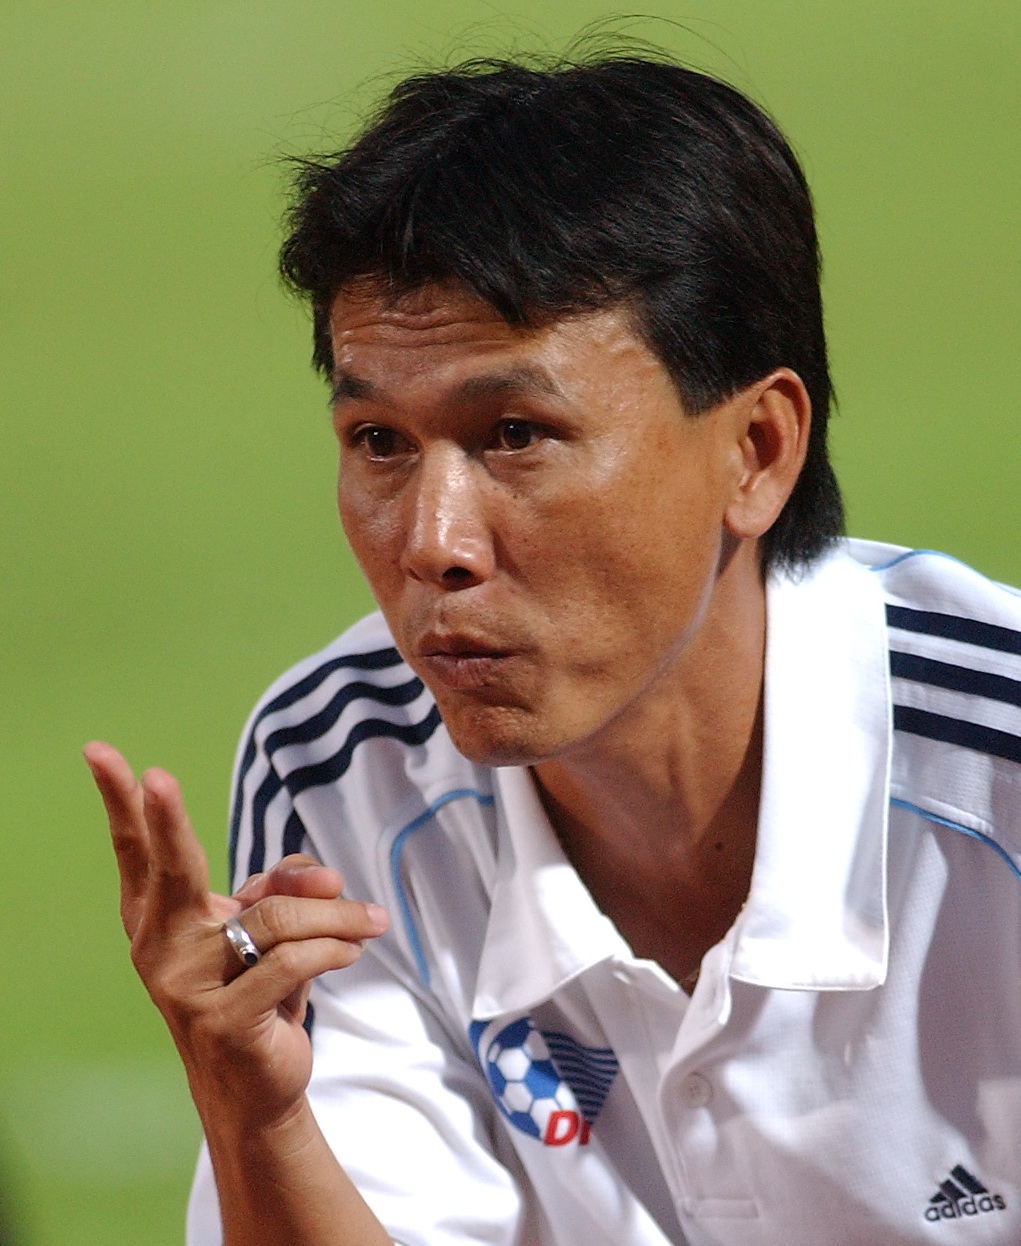 Cựu danh thủ Trần Công Minh trở lại với vai trò HLV trưởng CLB Đồng Tháp ở lượt về giải bóng đá hạng nhất quốc gia 2017. Ảnh: S.H